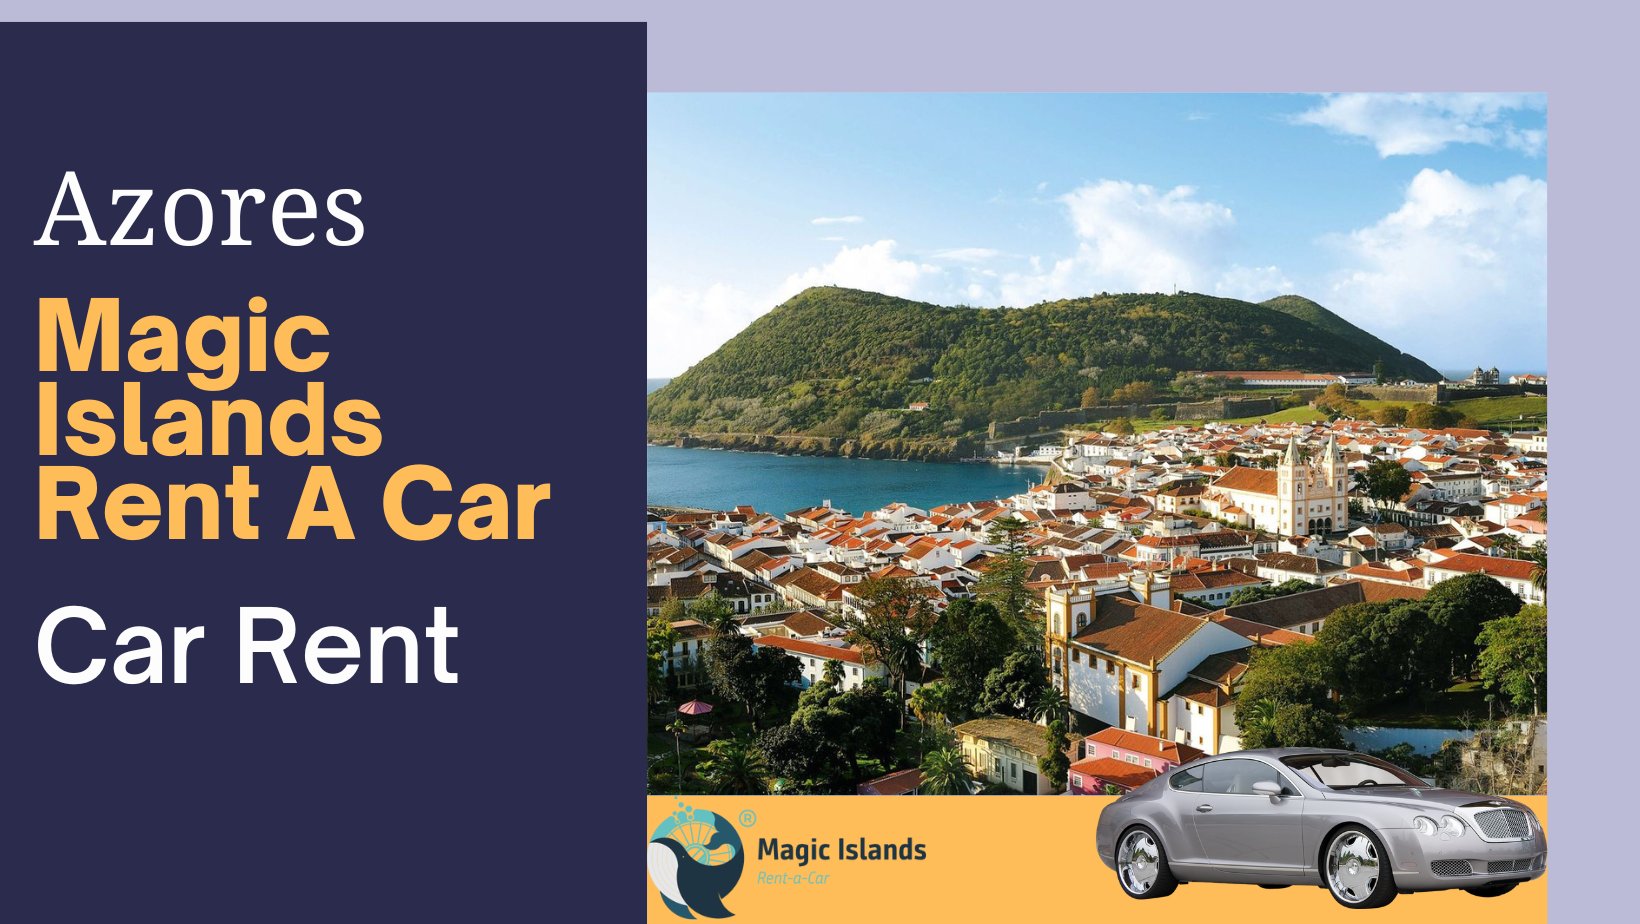 Magic Islands Rent A Car - Car Hire in Azores